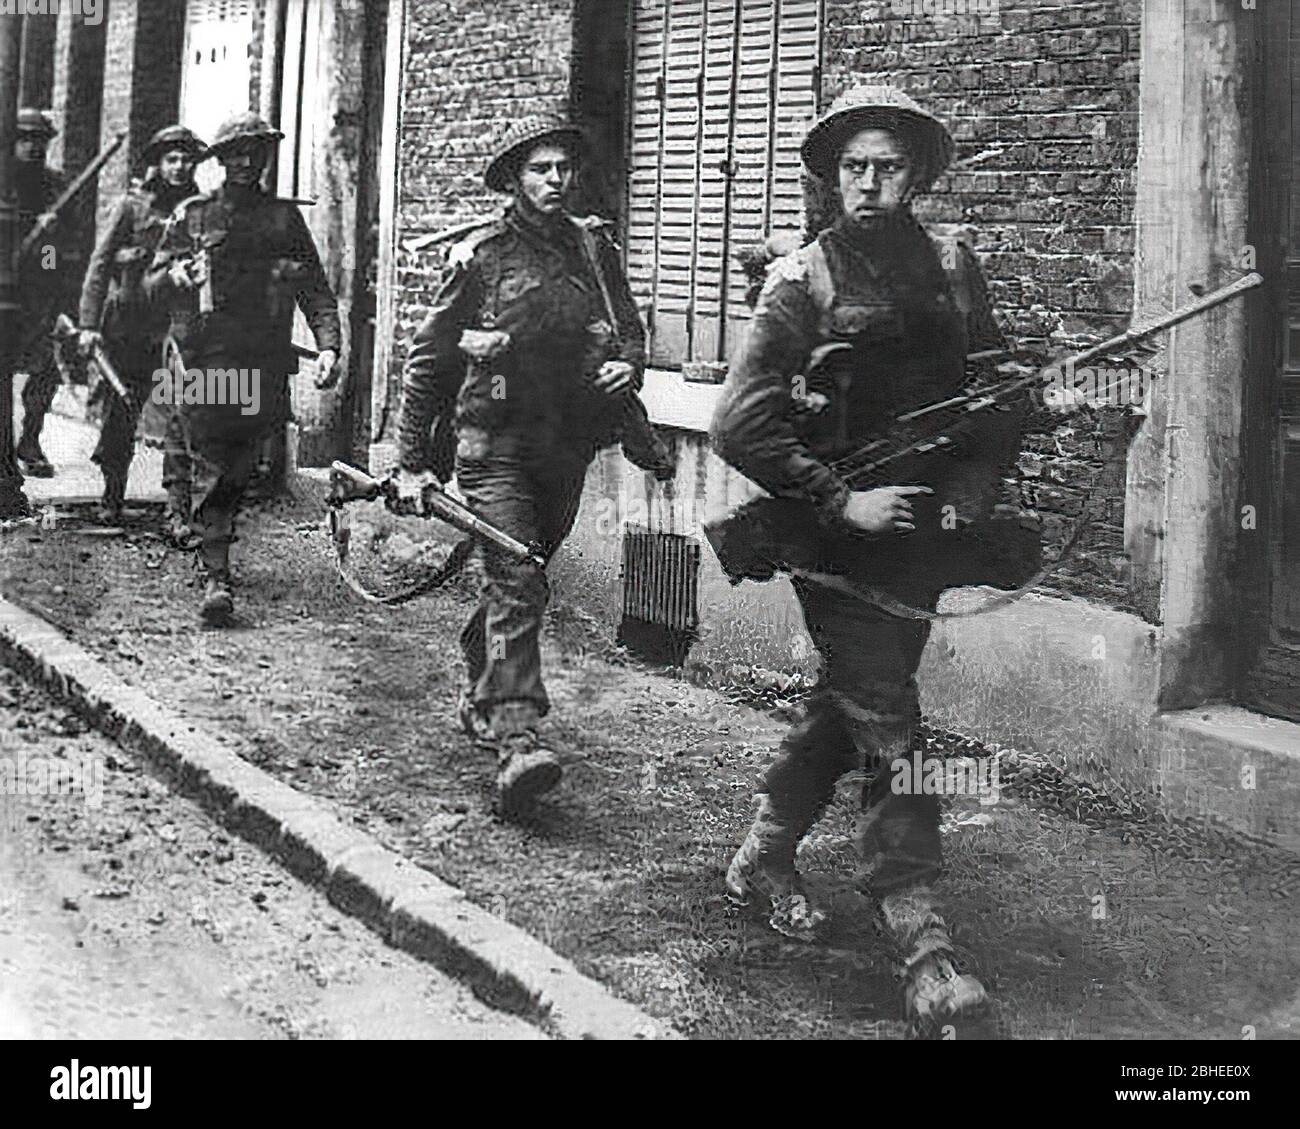 Troupes écossaises en seconde Guerre mondiale coldstream, gardes, arras, septembre 1944 Banque D'Images